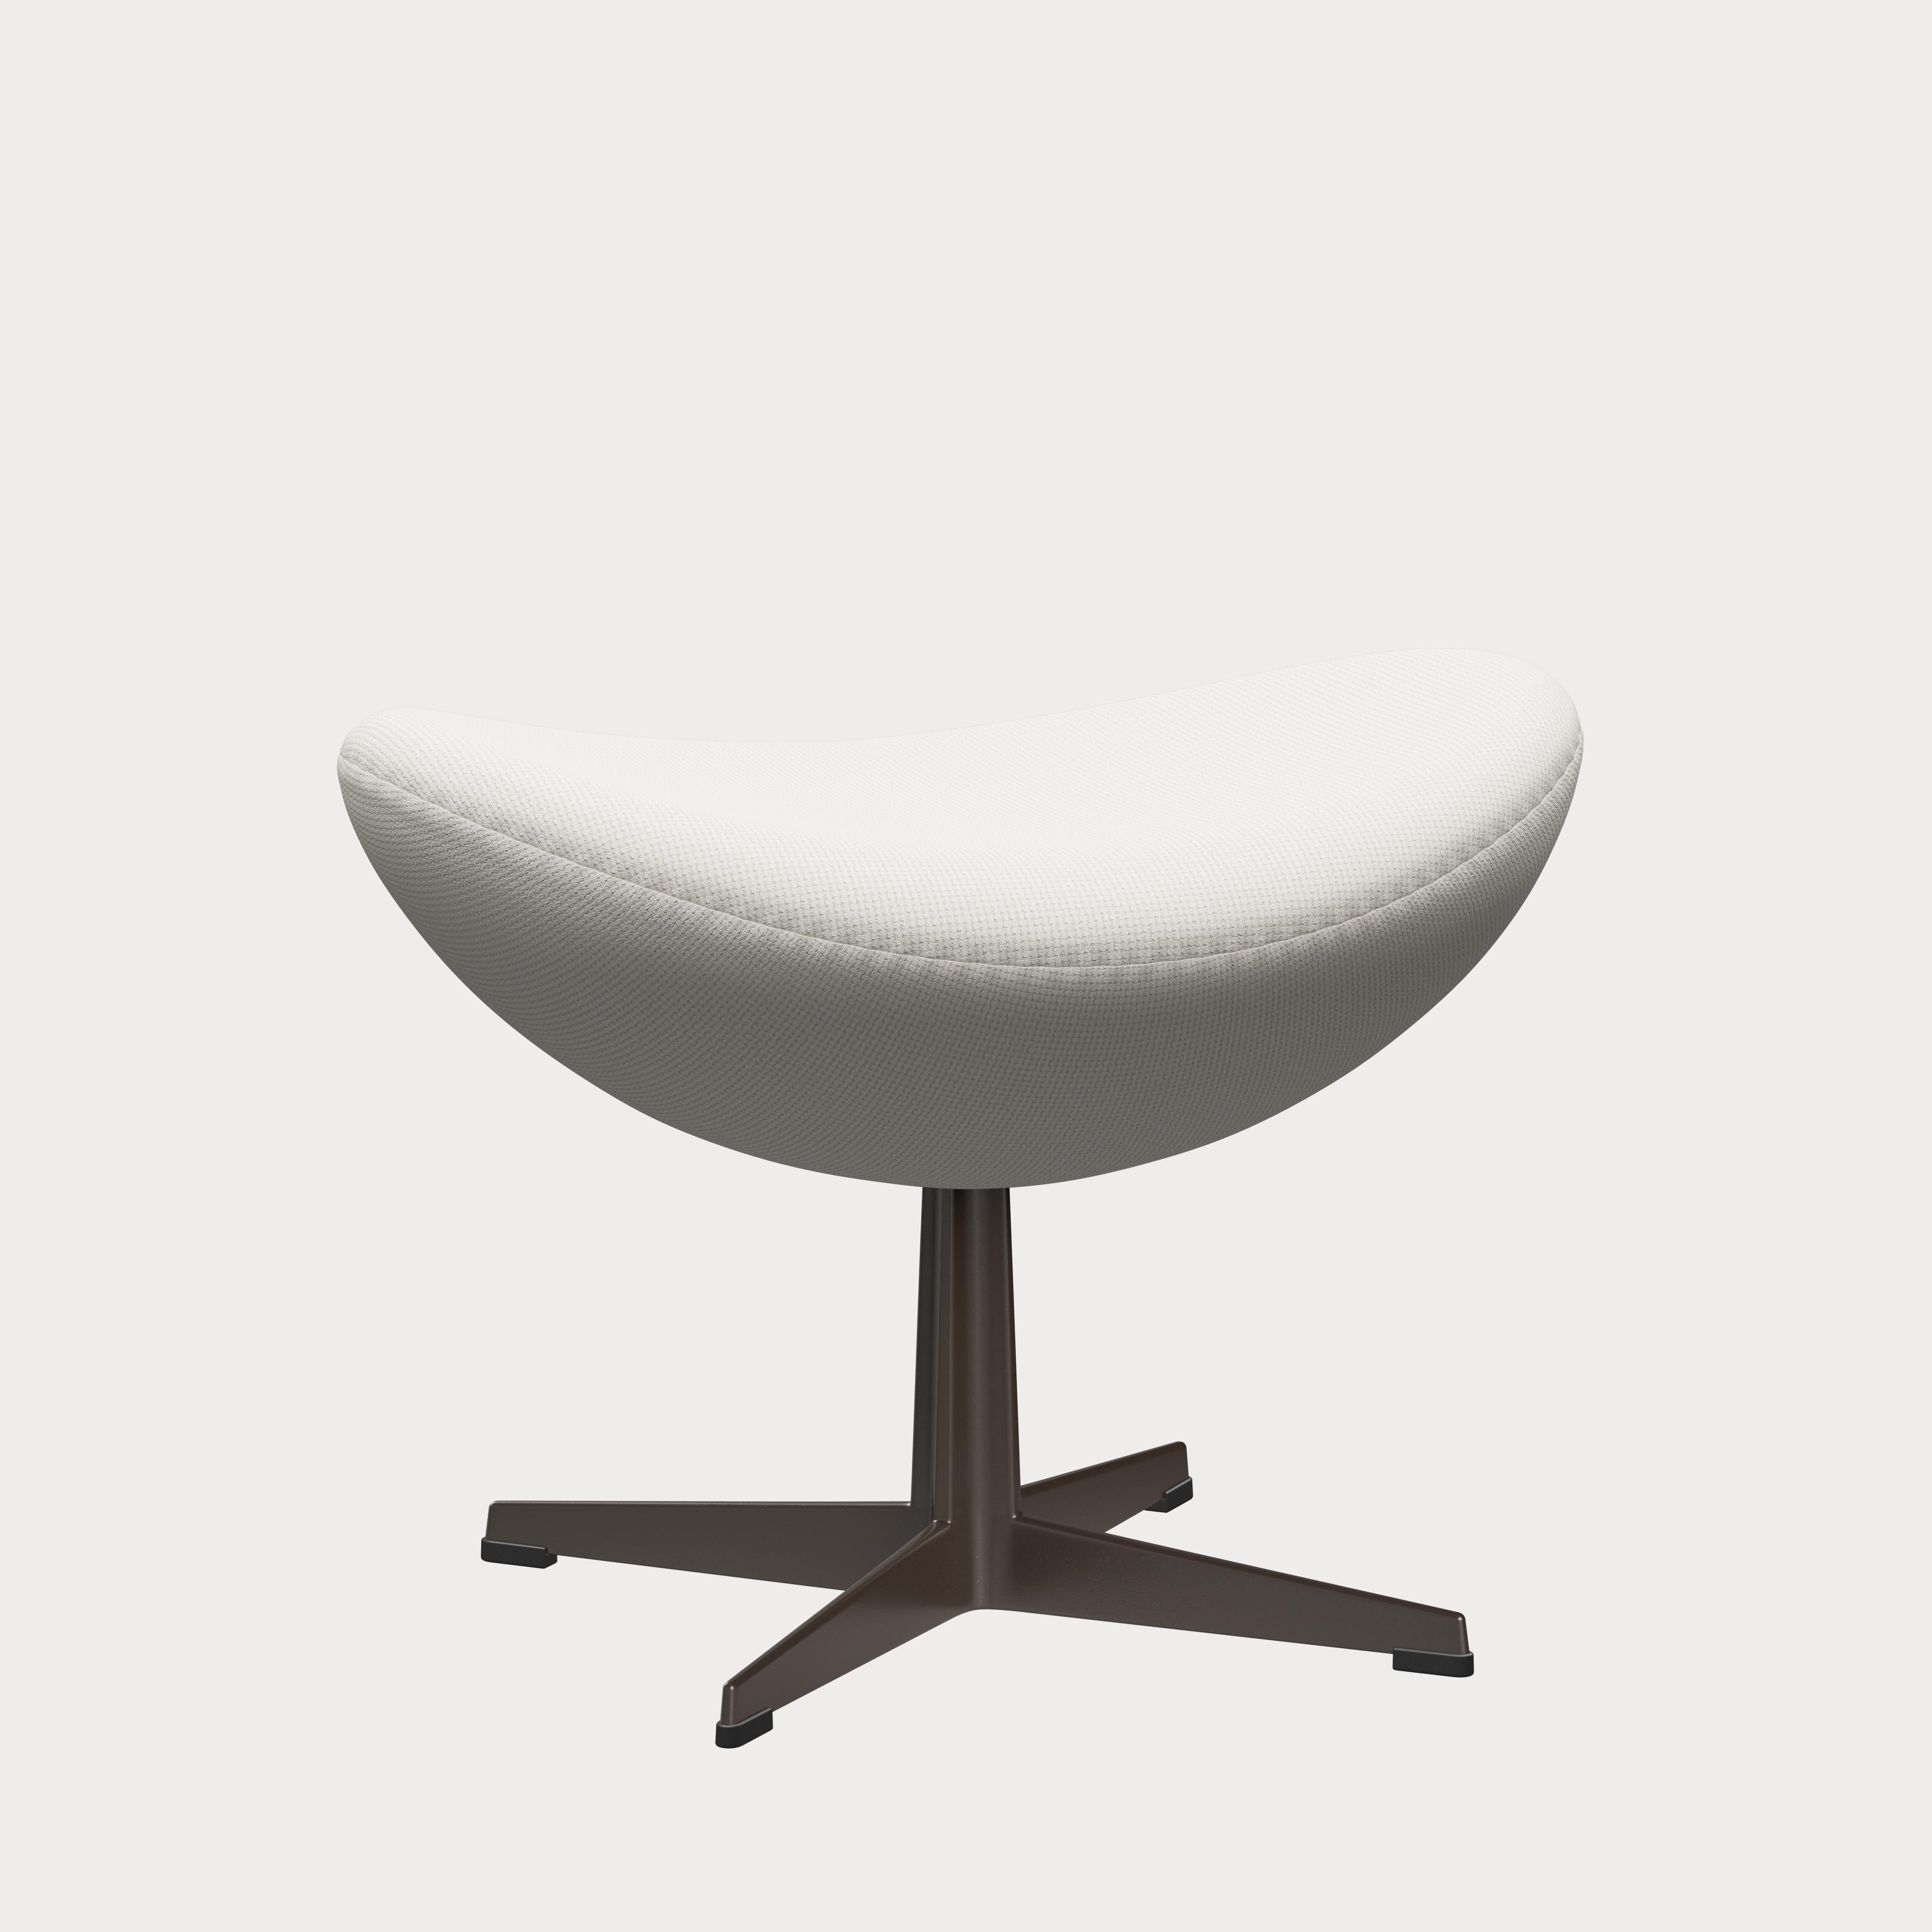 Arne Jacobsen 'Egg' Footstool for Fritz Hansen in Fabric Upholstery (Cat. 1) For Sale 4